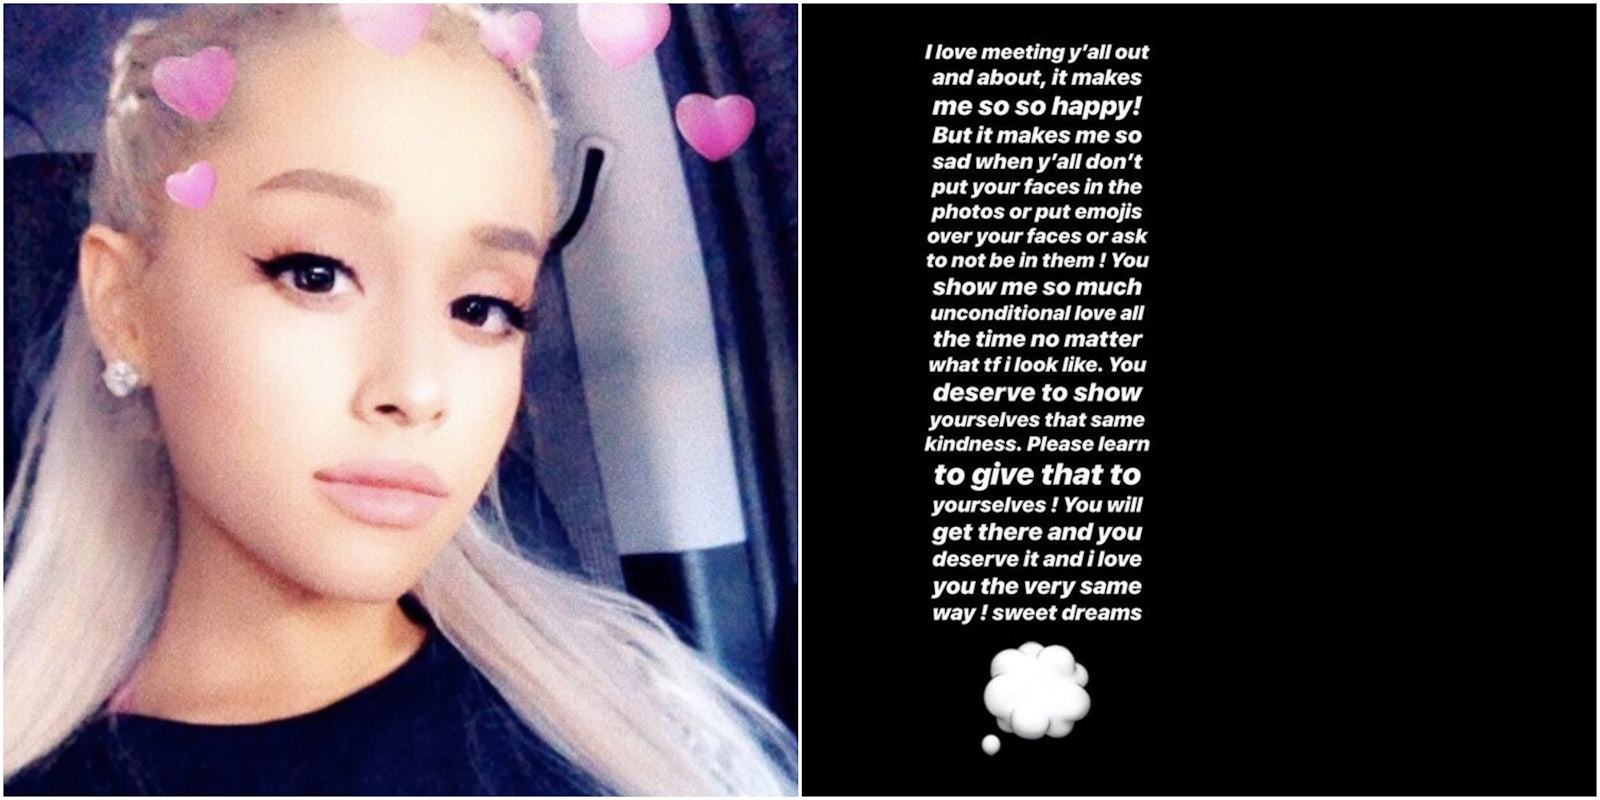 Ariana Grande selfie instagram story